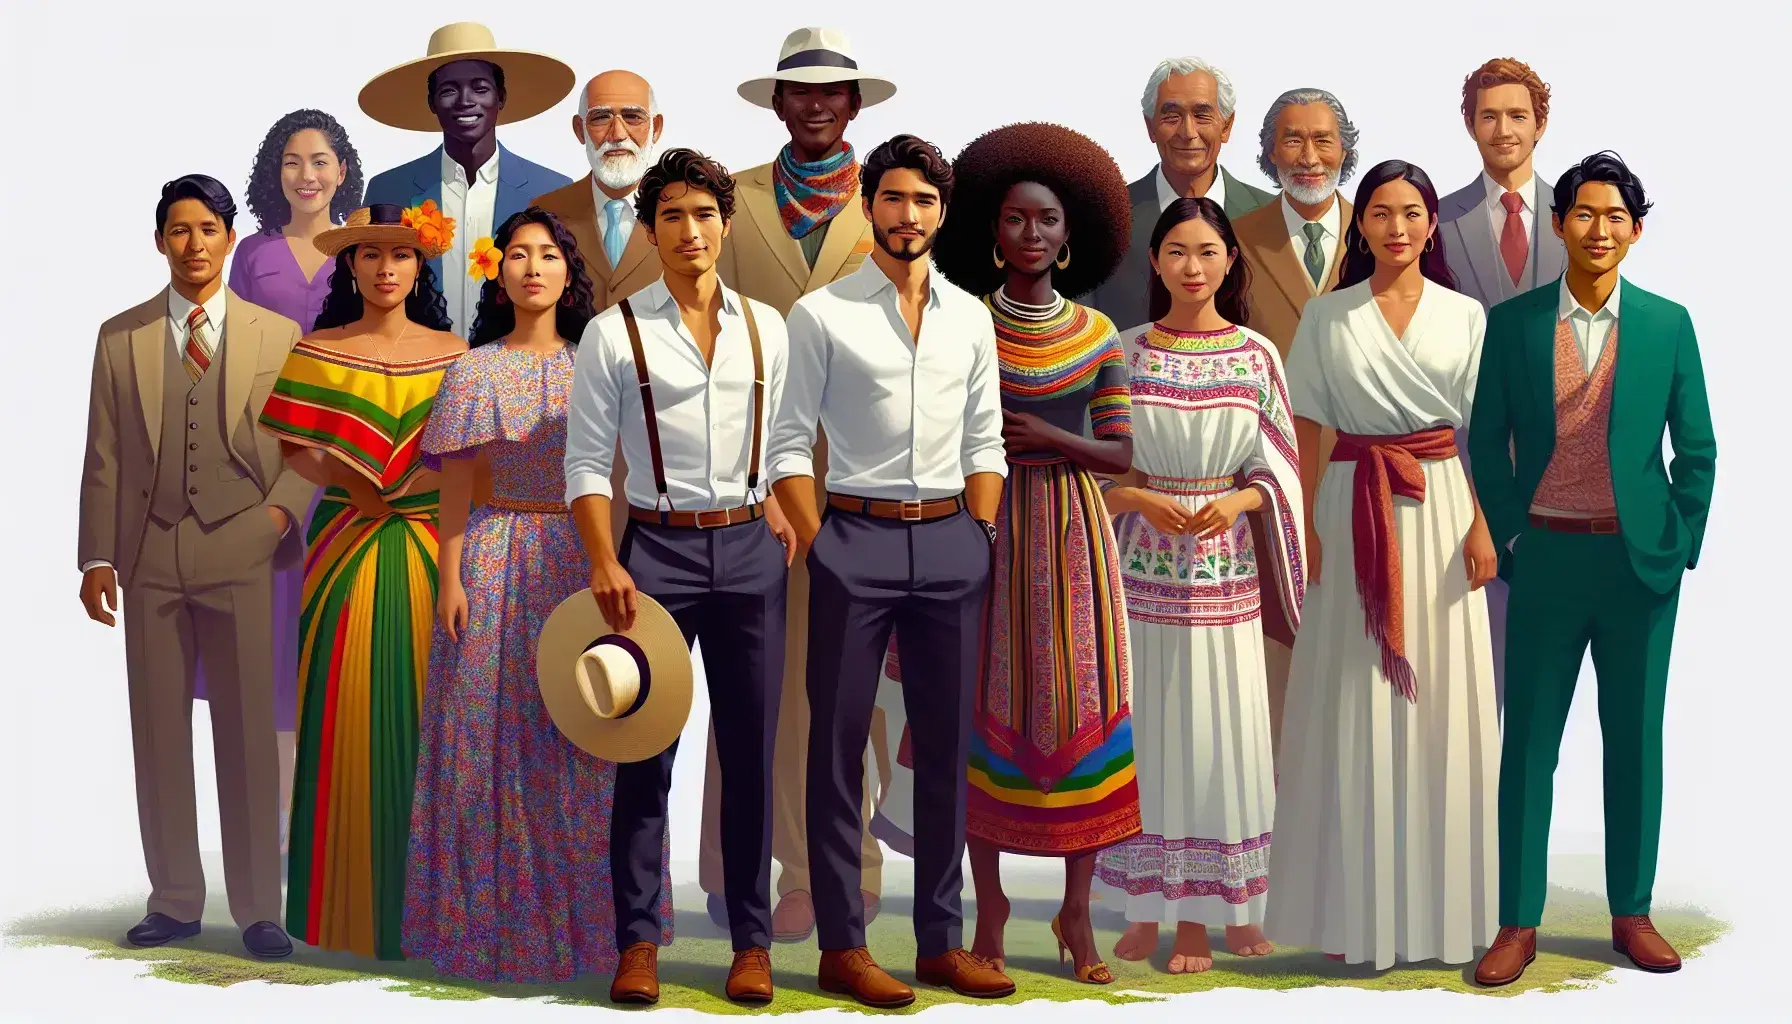 Grupo diverso de personas representando etnias de Ecuador, con vestimenta tradicional y sonrientes en un entorno natural.